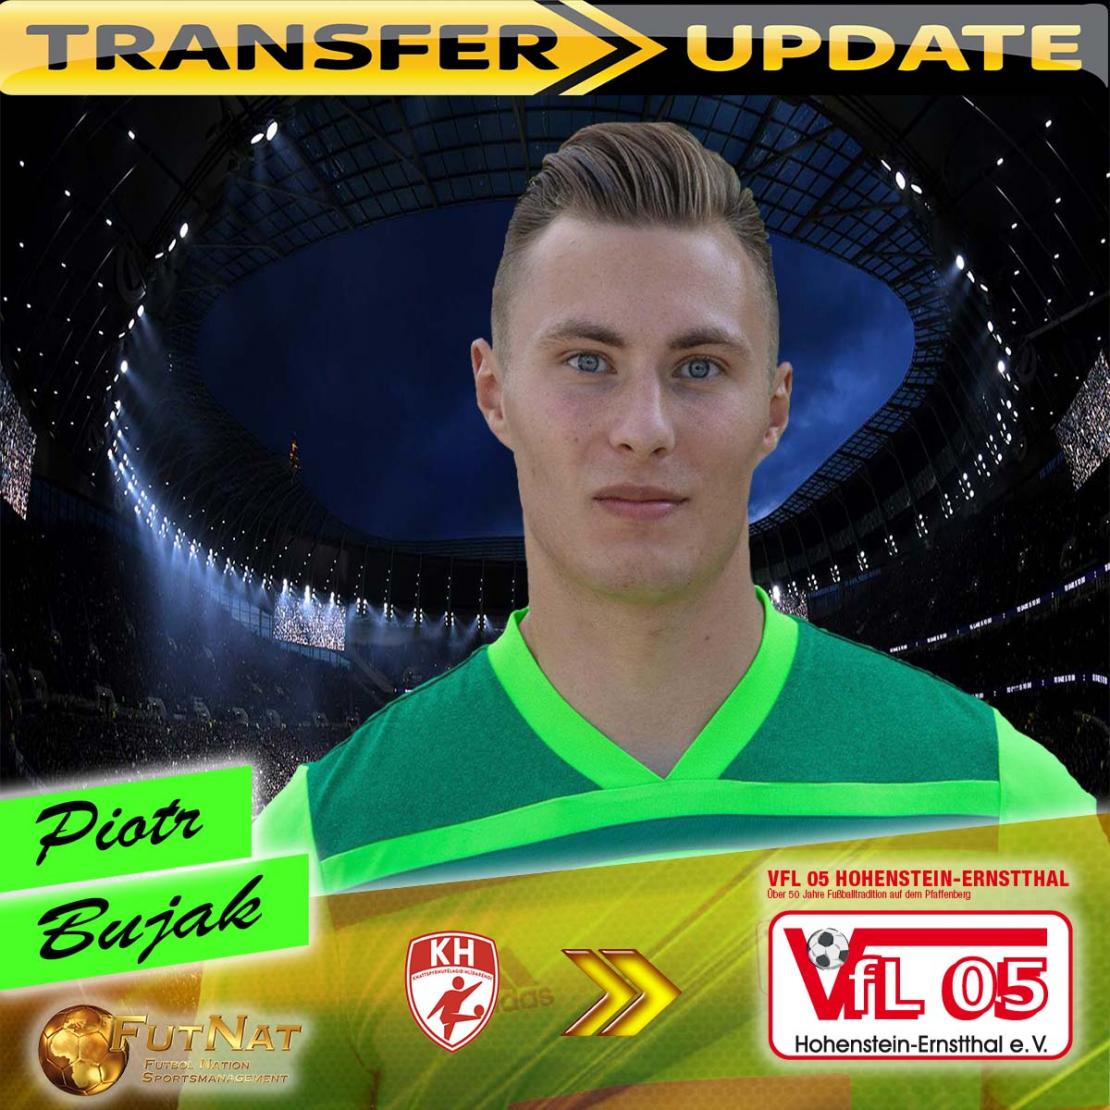 Piotr Bujak transfer to VfL 05 Hohenstein-Ernstthal